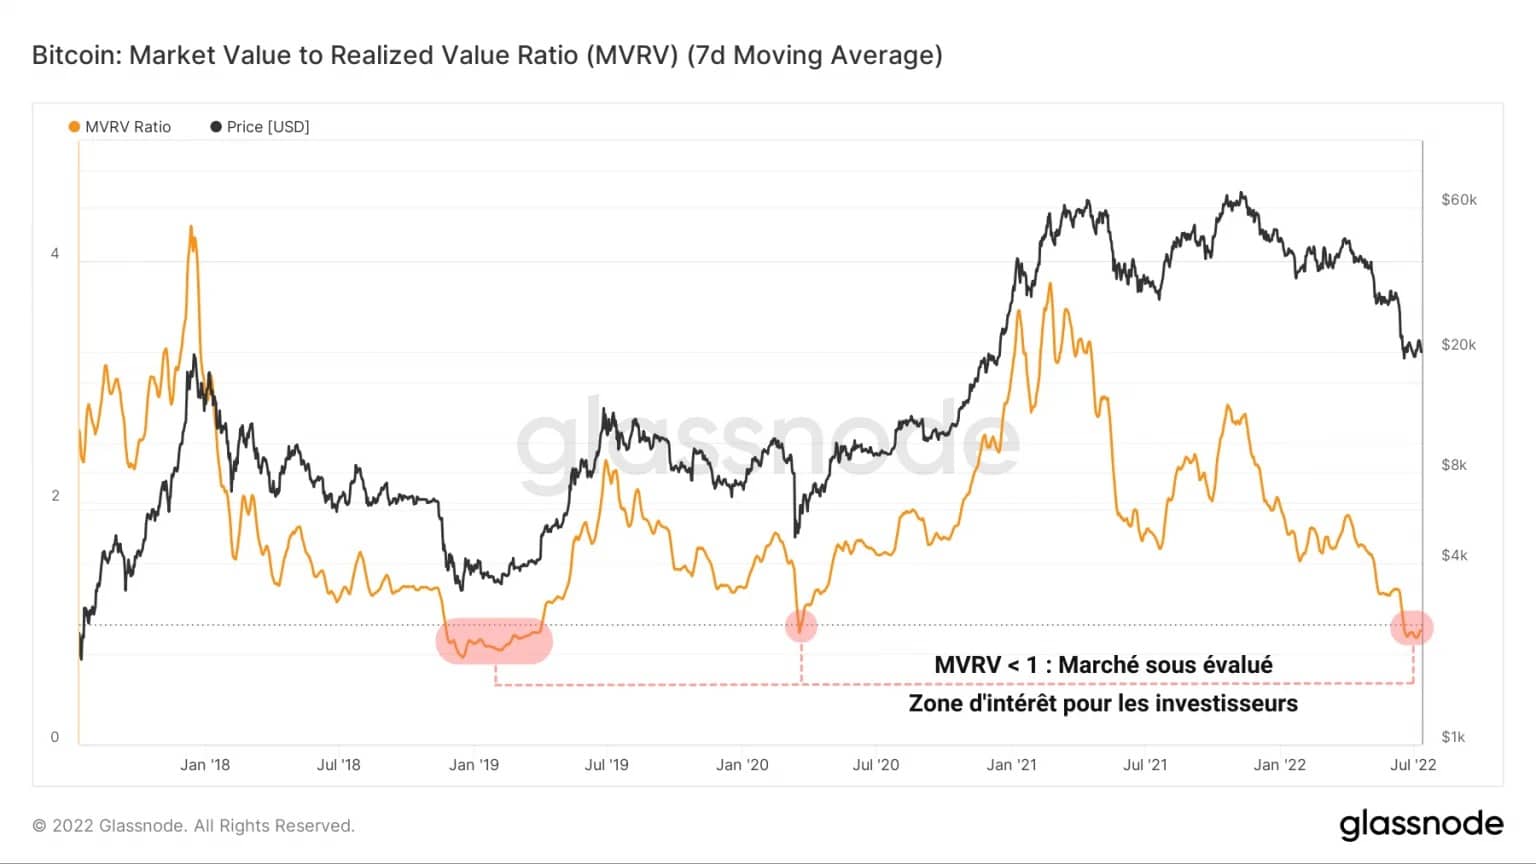 Figure 2: MVRV ratio